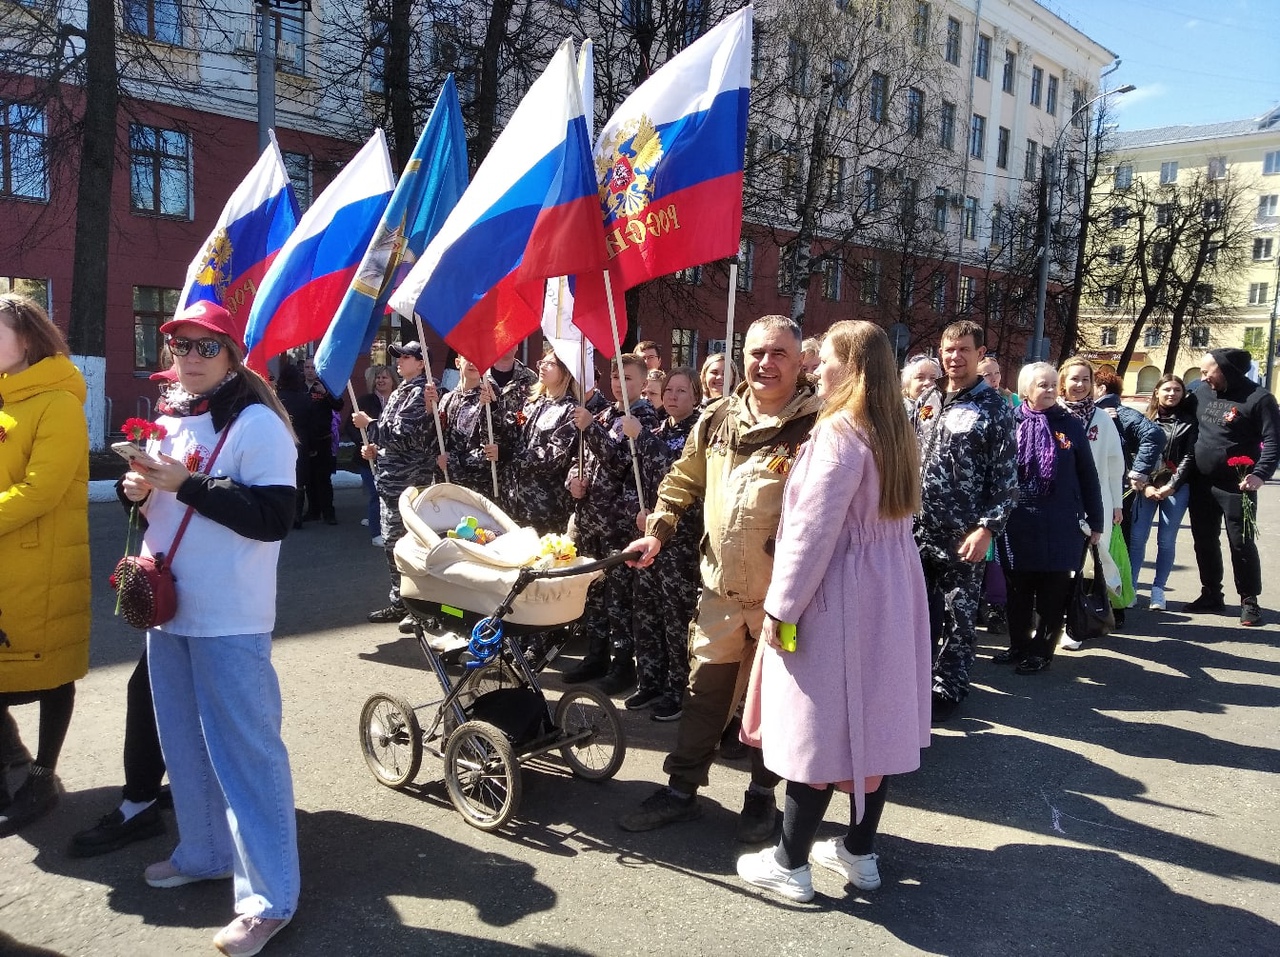 "До весны еще далеко": синоптики рассказали, какой будет погода в Кирове в майские праздники